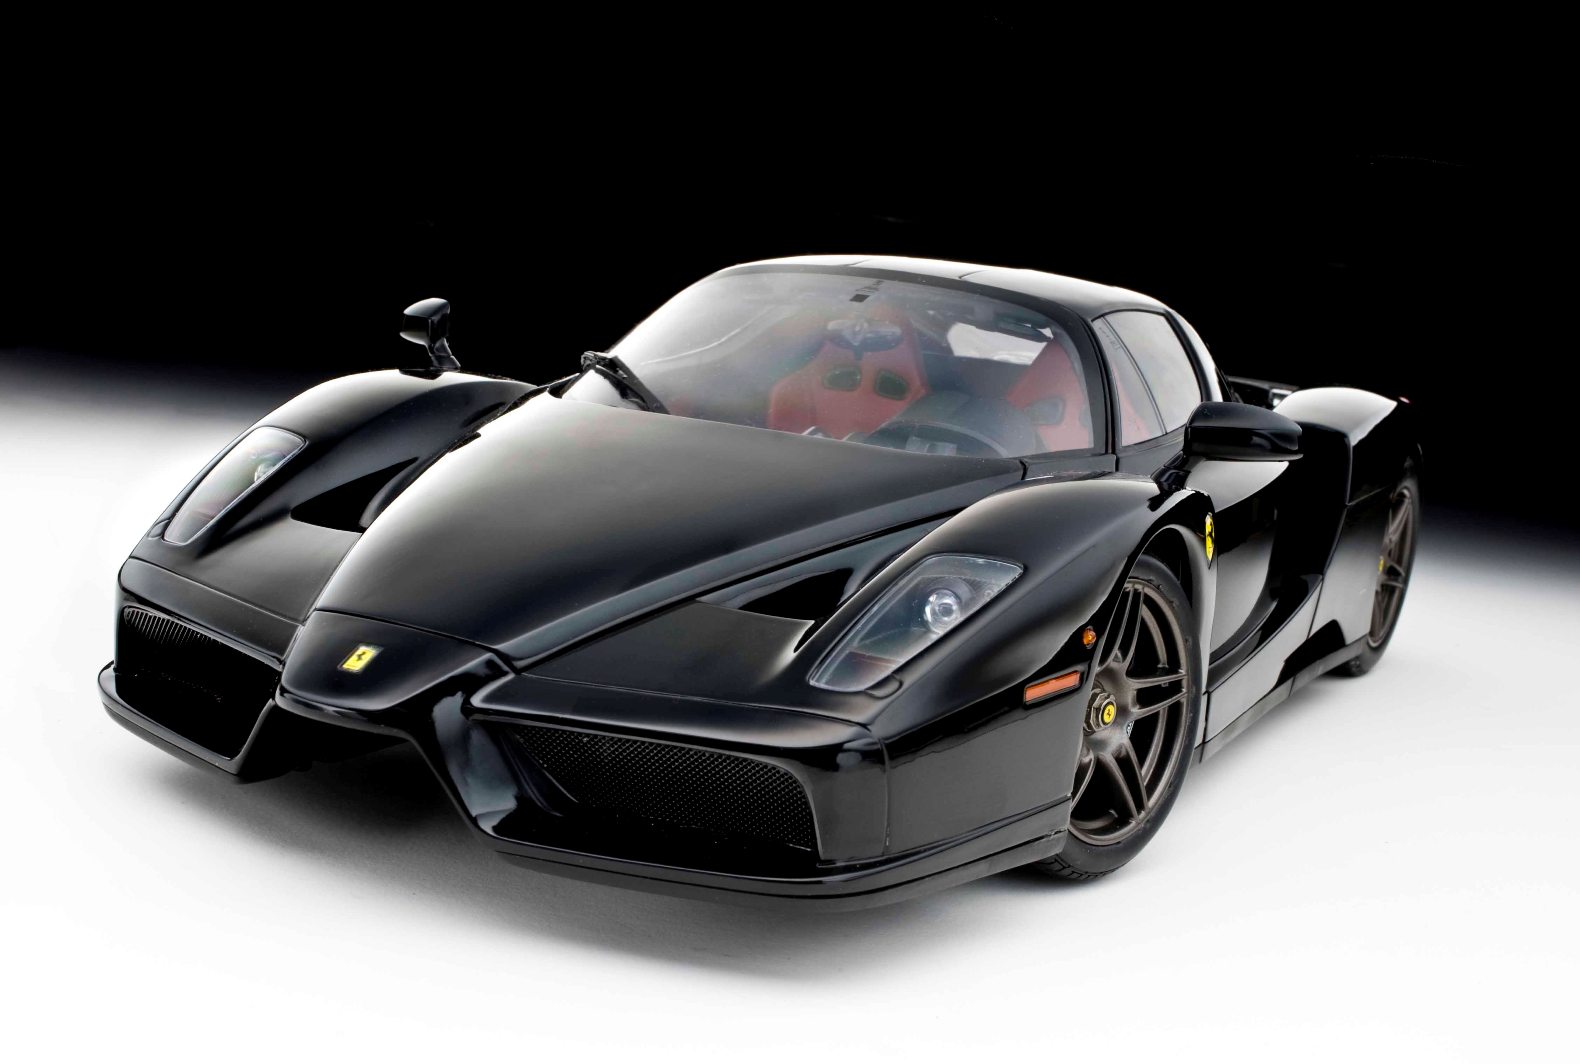 Gambar Foto Mobil Ferrari Terbaru